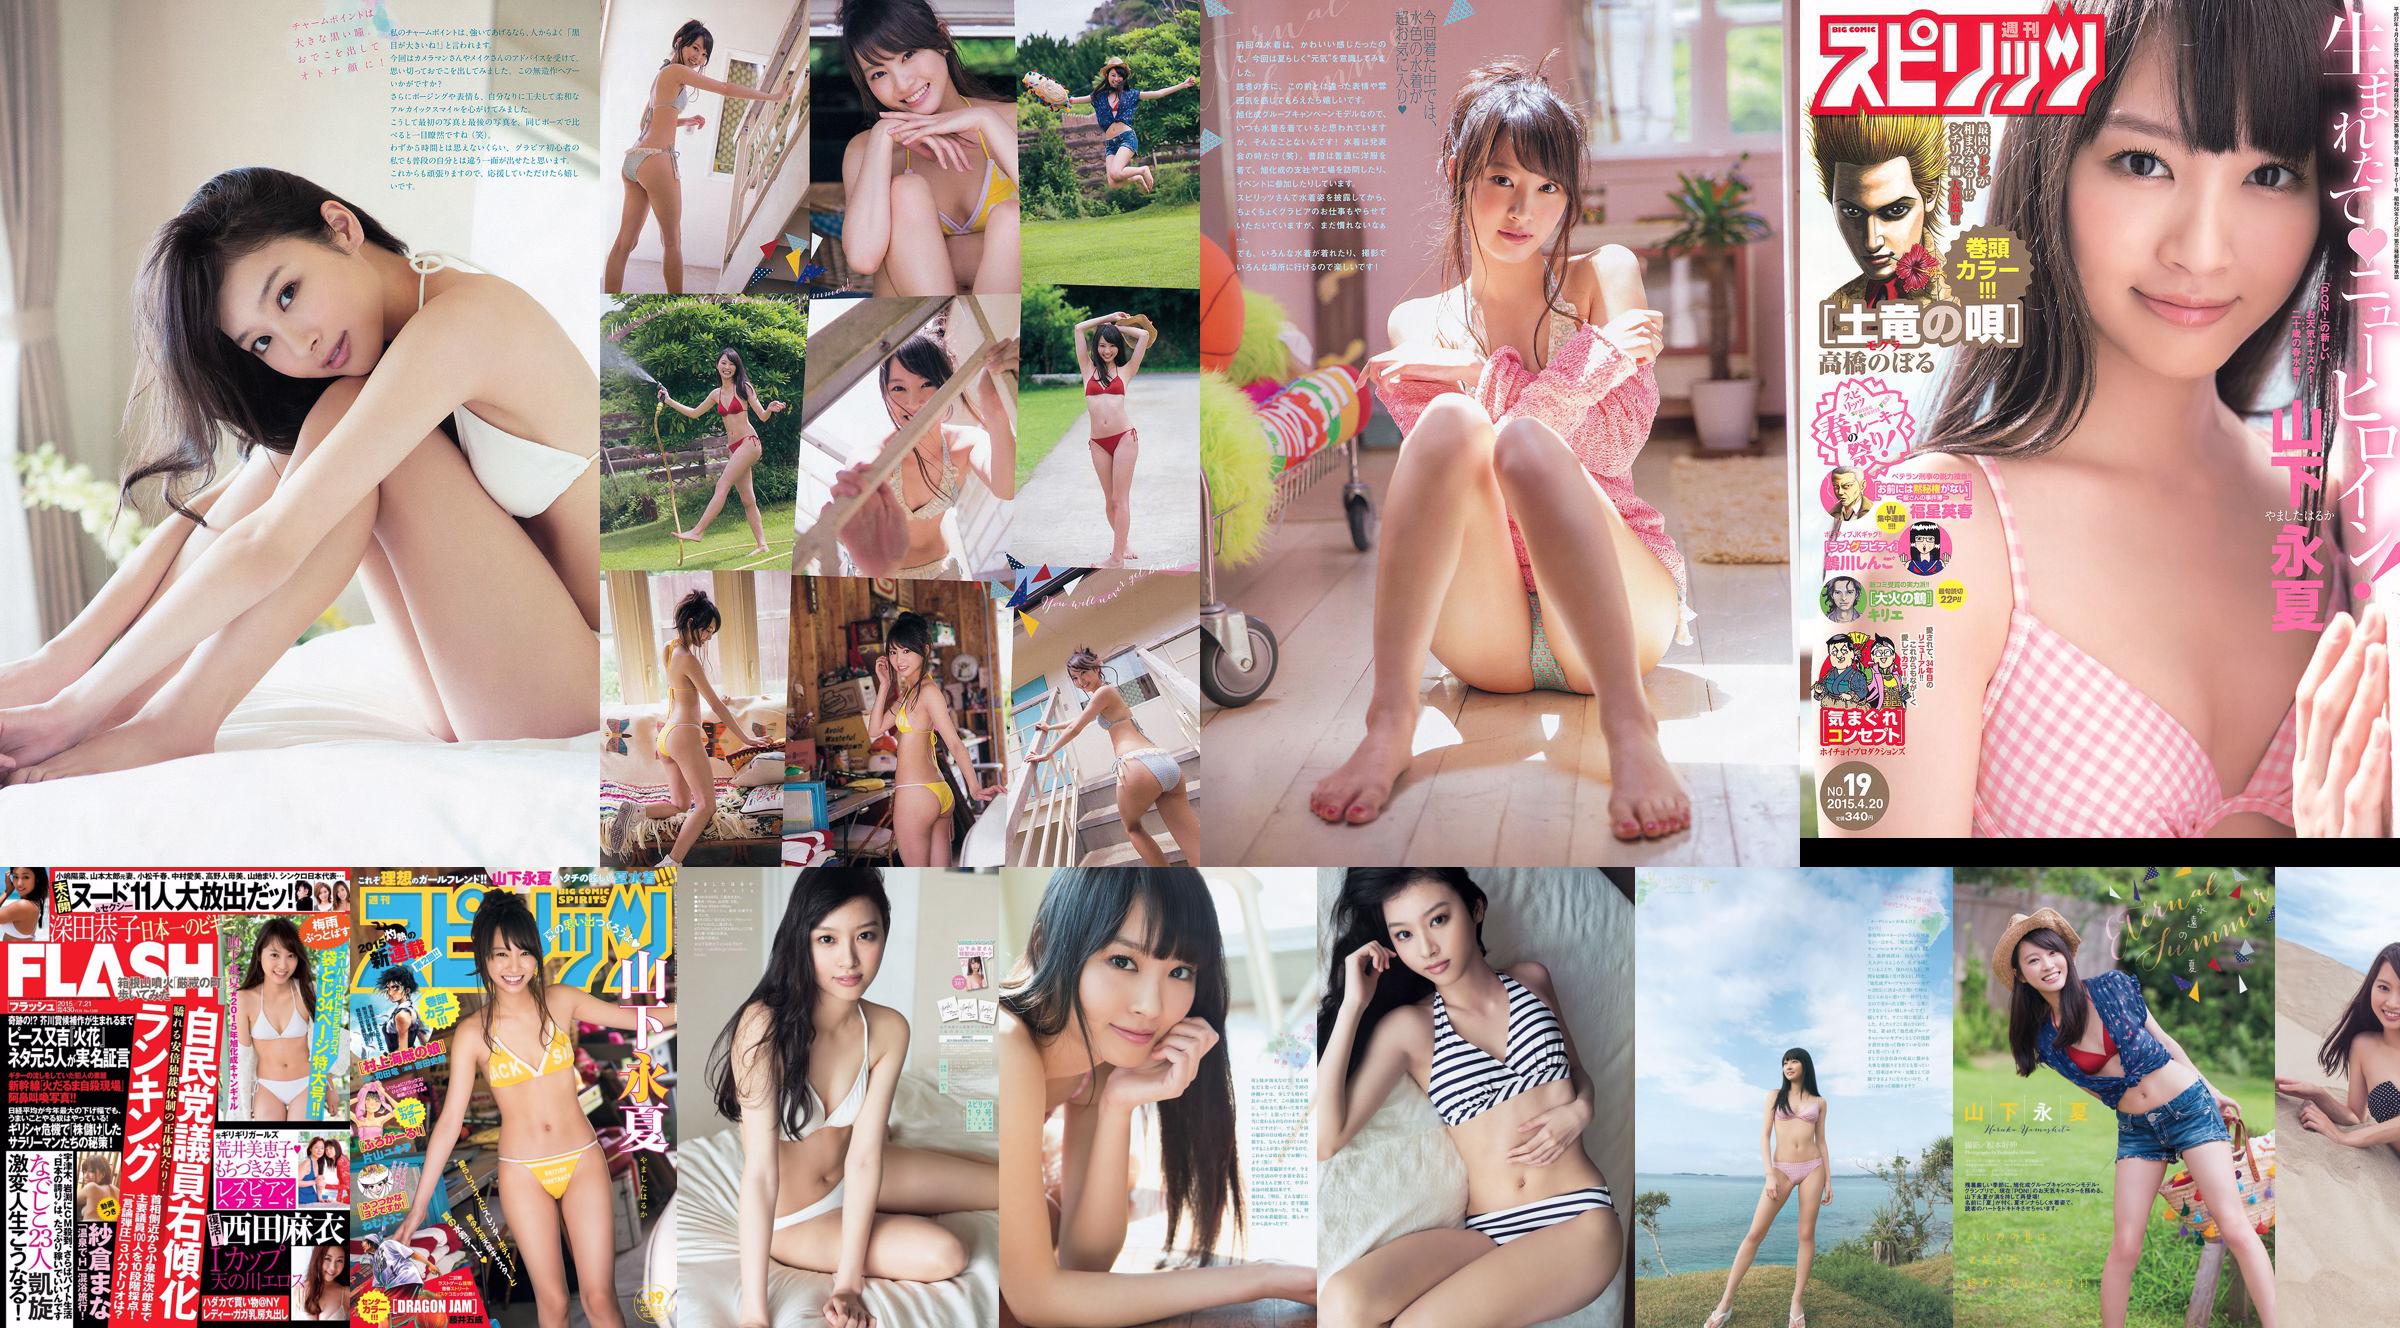 [Weekly Big Comic Spirits] Yamashita Yongxia 2015 No.39 Photo Magazine No.26c5db Page 1